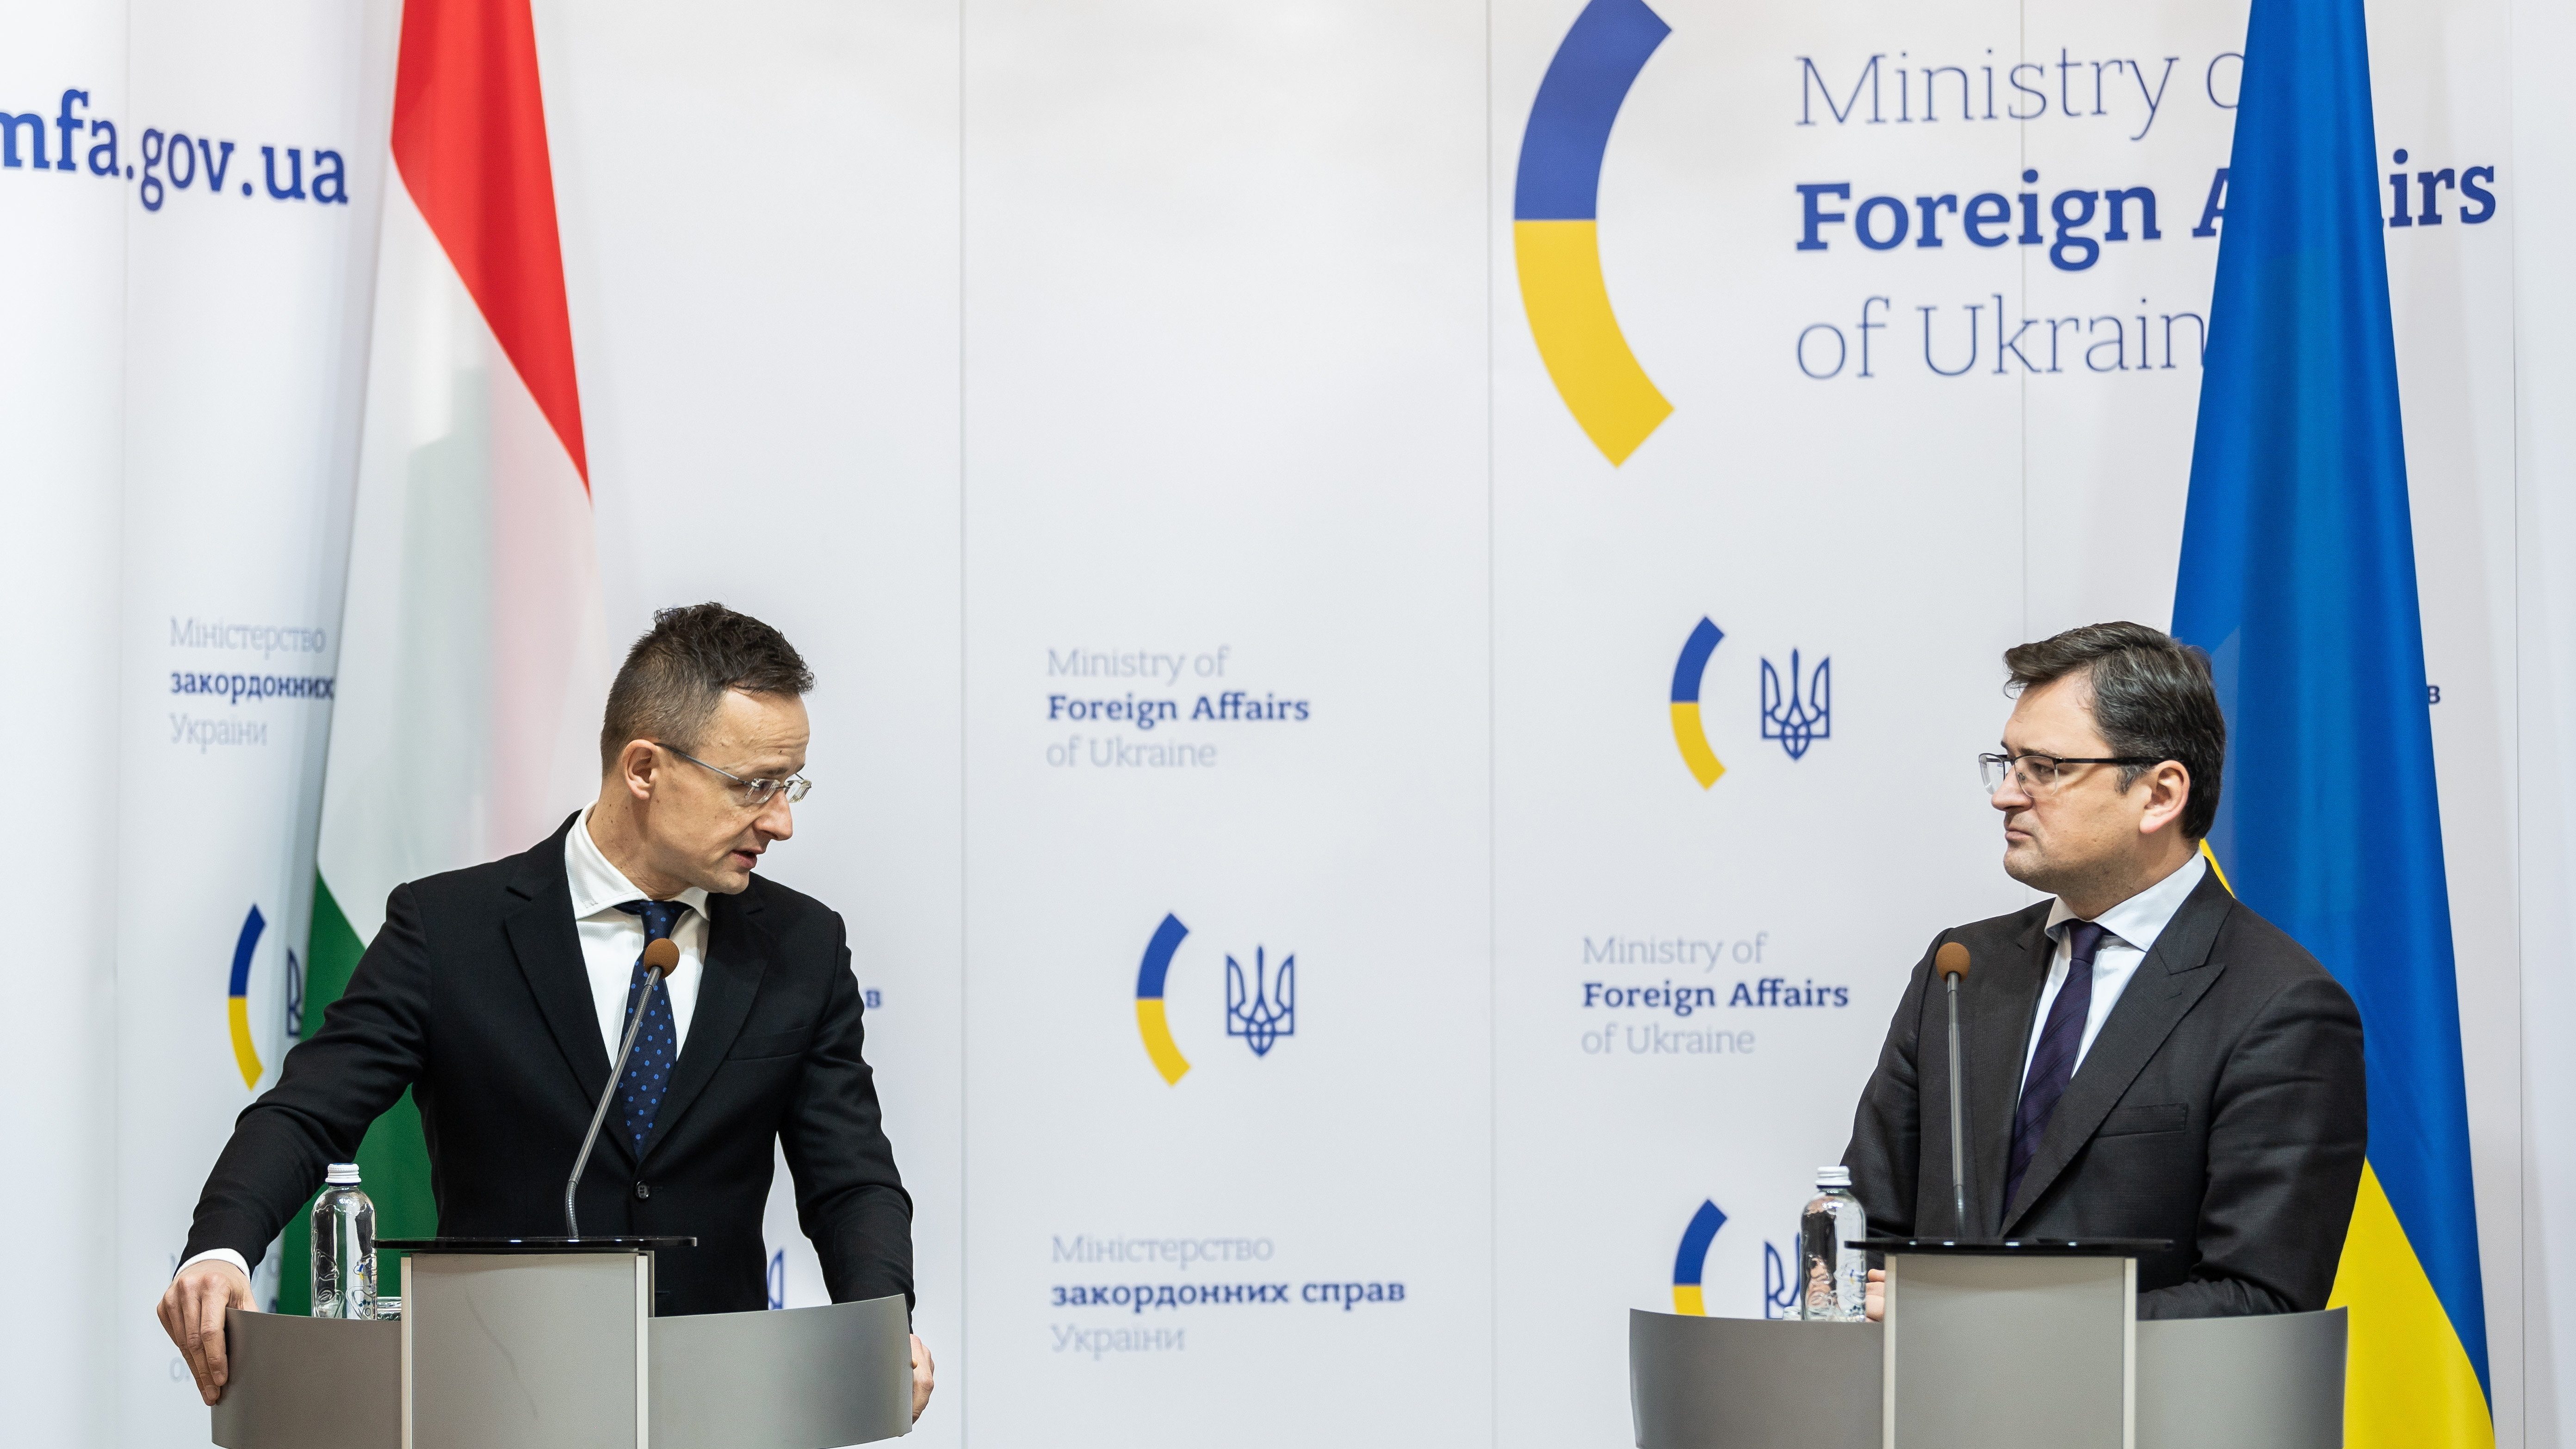 Az ukrán külügyminisztérium is bekéreti a magyar nagykövetet